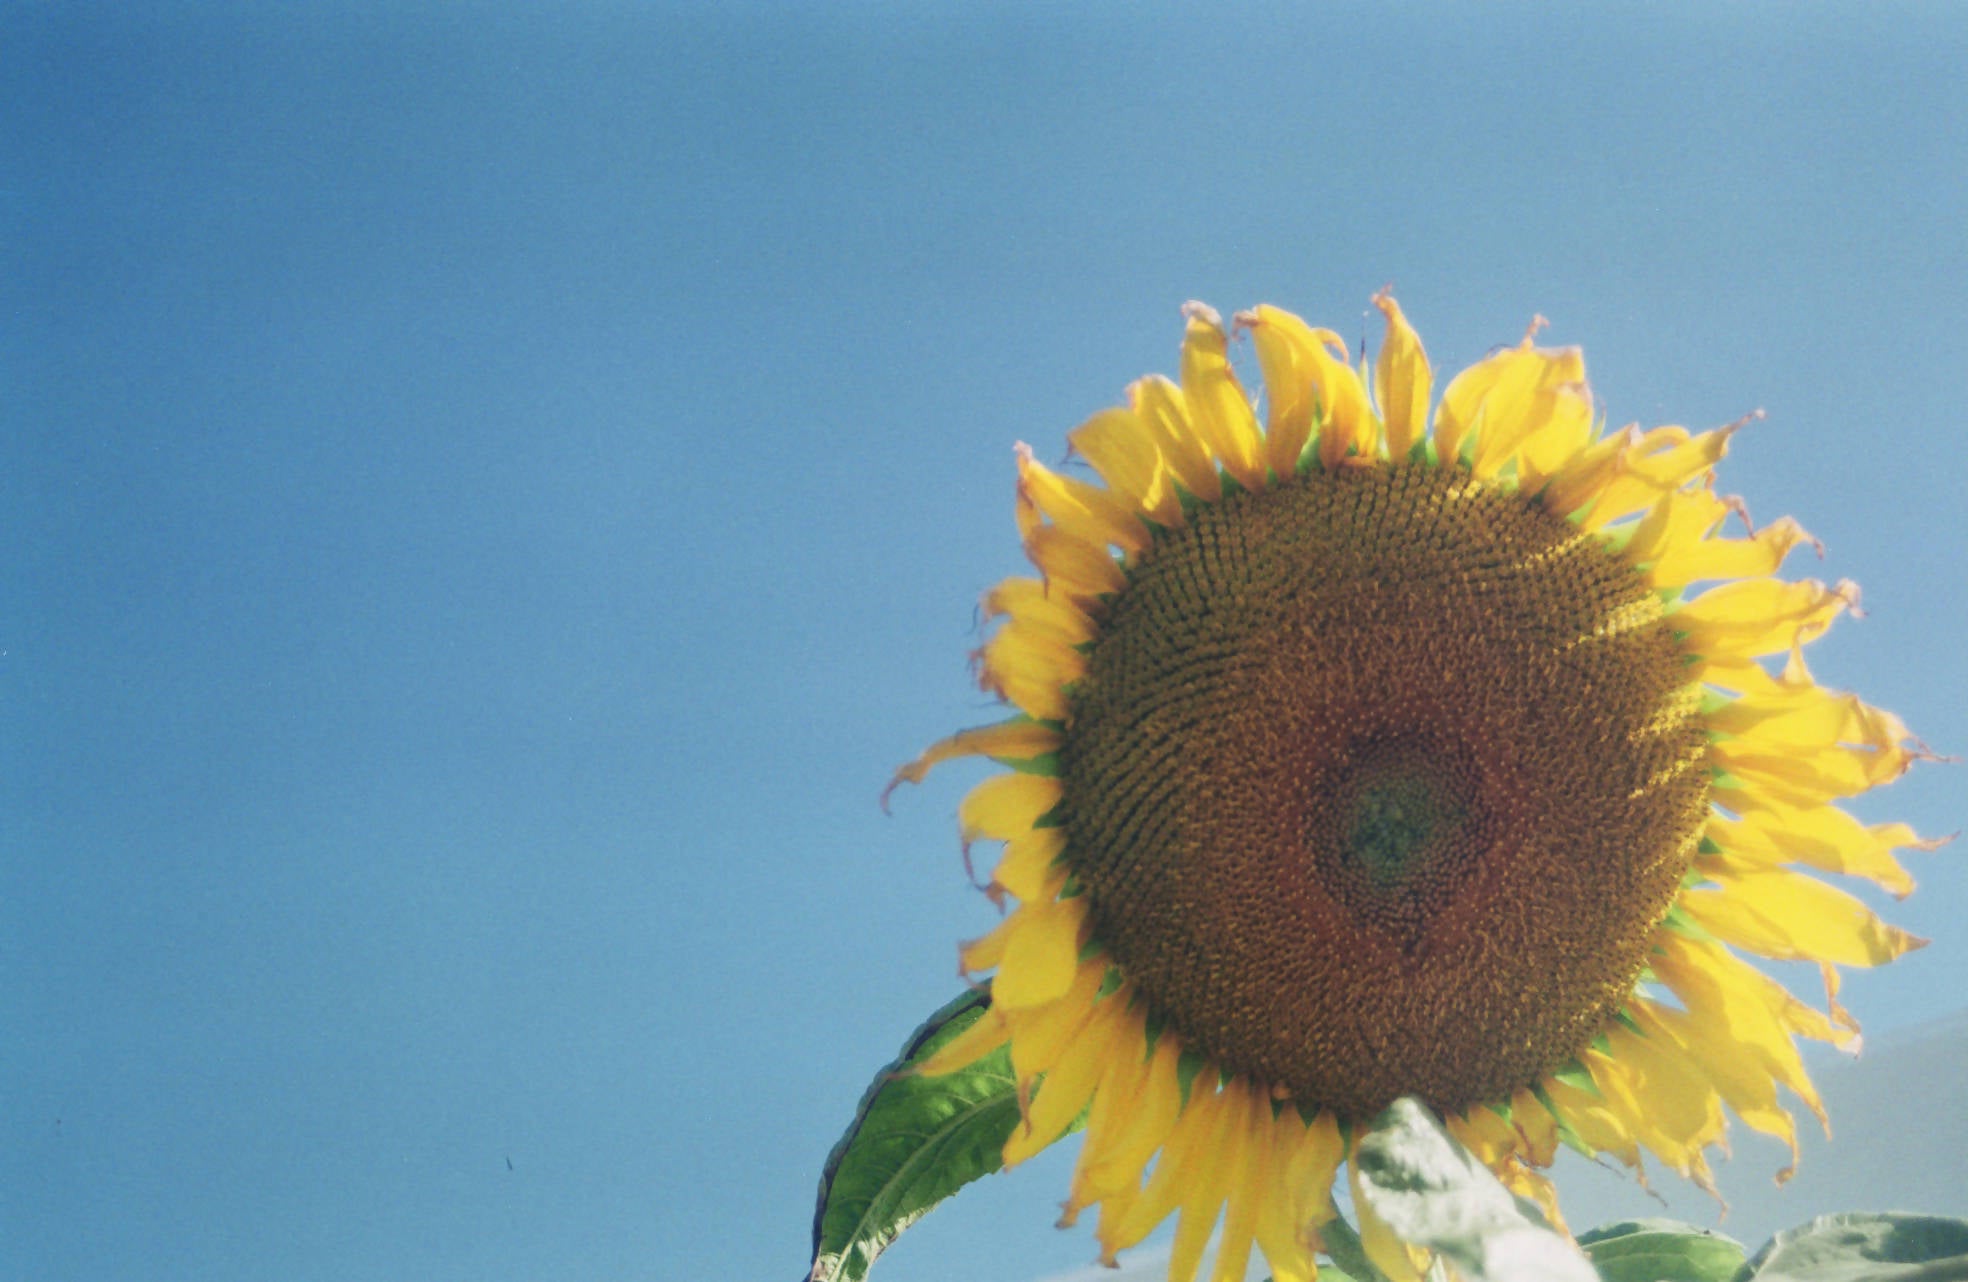 Sunflower in the sunshine.